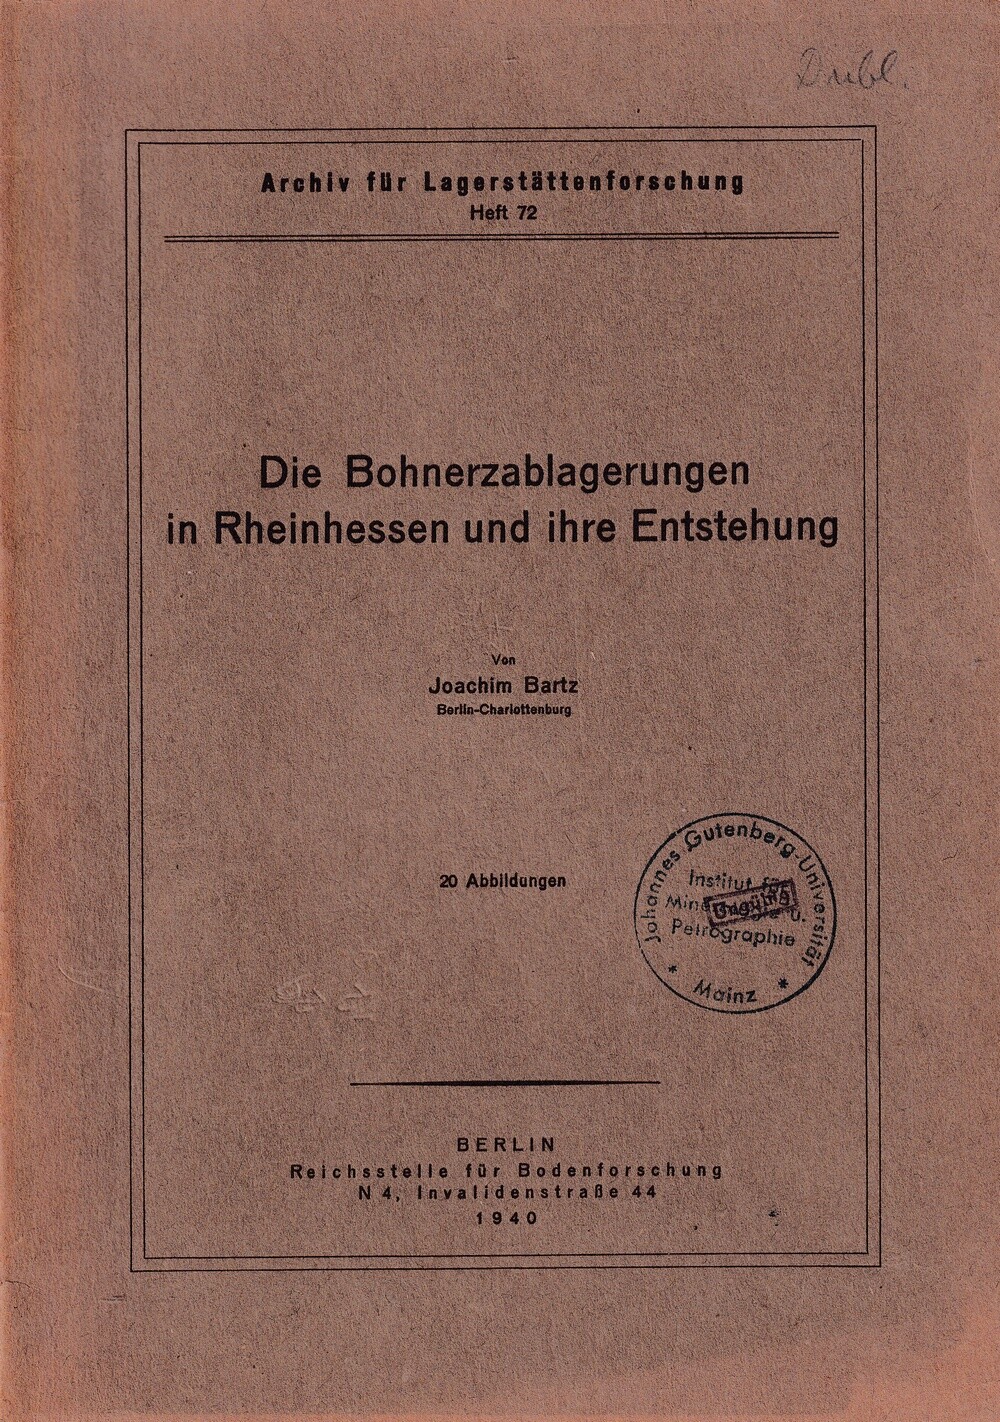 Die Bohnerzablagerungen in Rheinhessen und ihre Entstehung (Kulturverein Guntersblum CC BY-NC-SA)